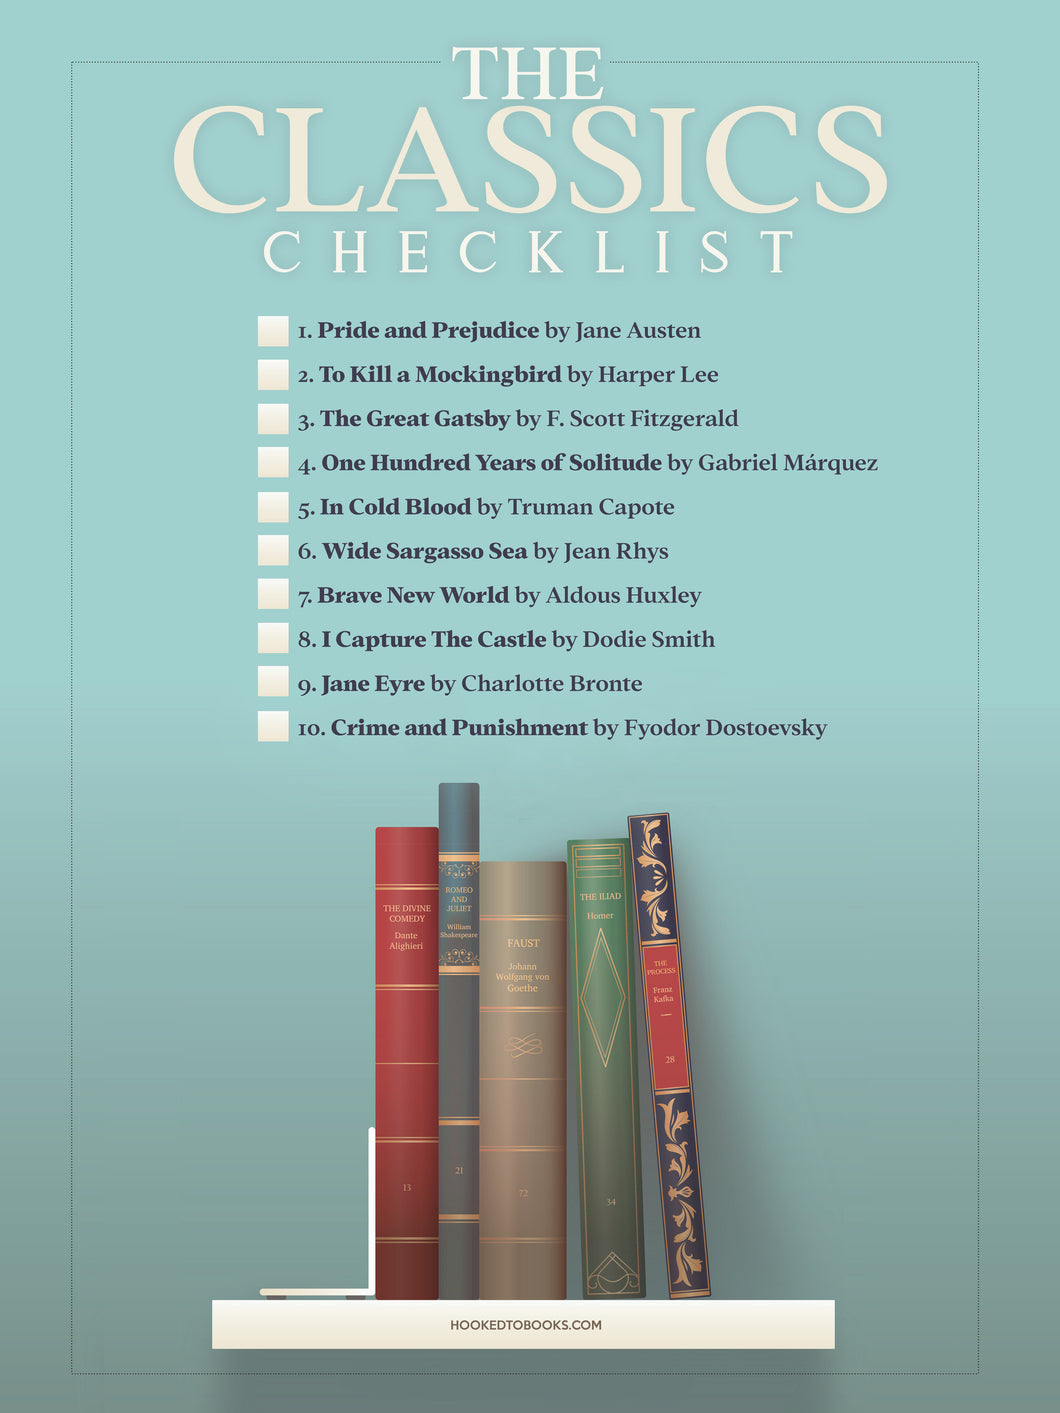 The Classics Checklist